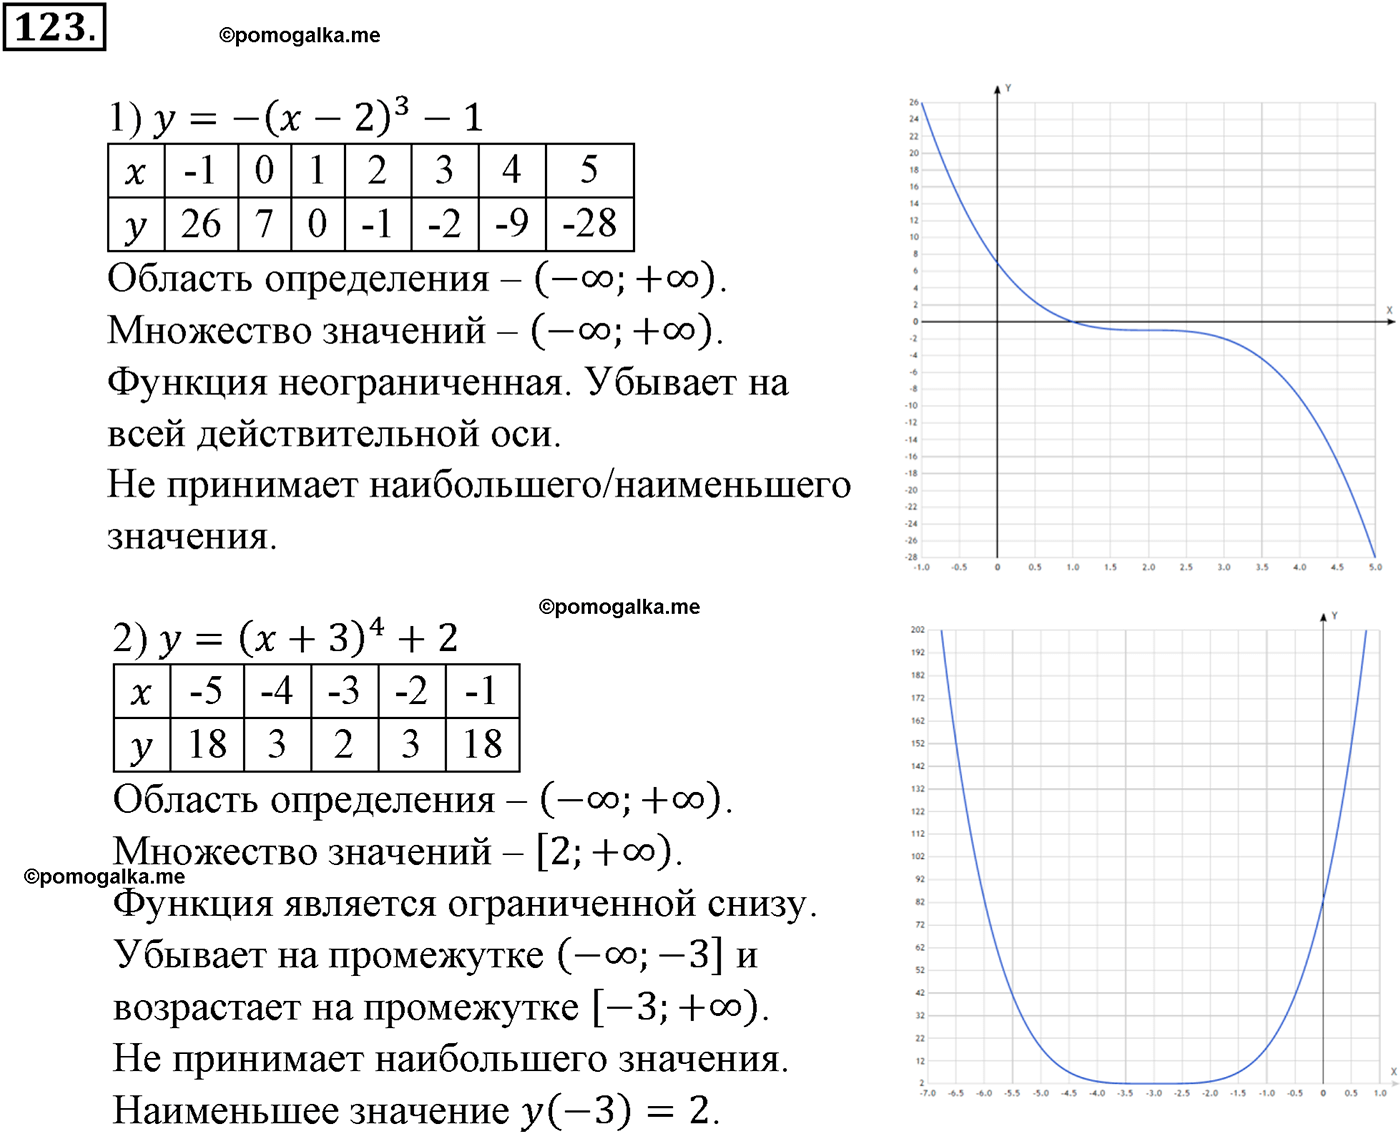 разбор задачи №123 по алгебре за 10-11 класс из учебника Алимова, Колягина